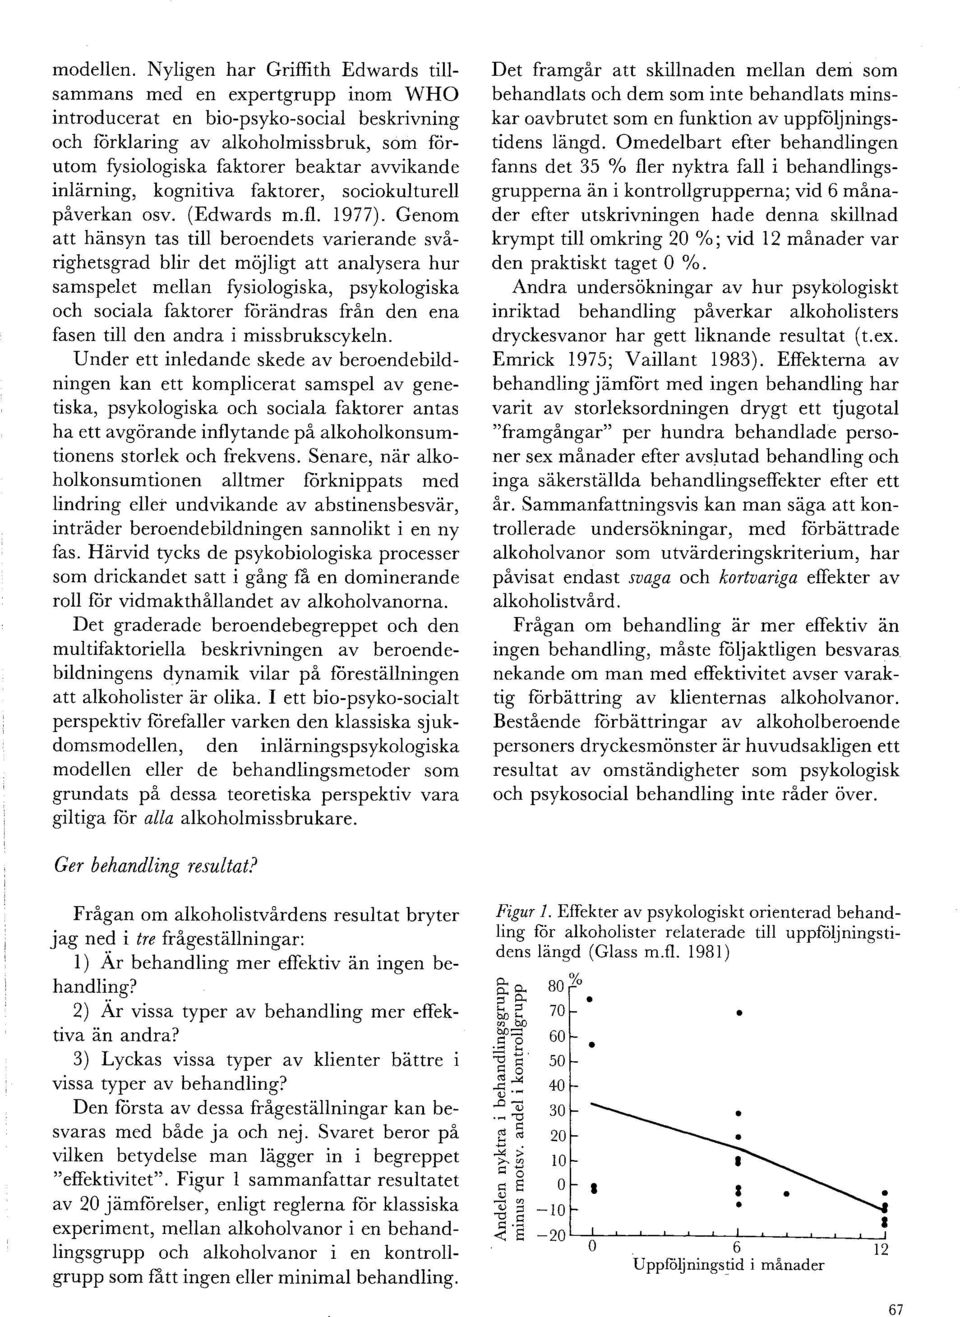 avvikande inlarning, kognitiva faktorer, sociokulturell påverkan osv. (Edwards m.fl. 1977).